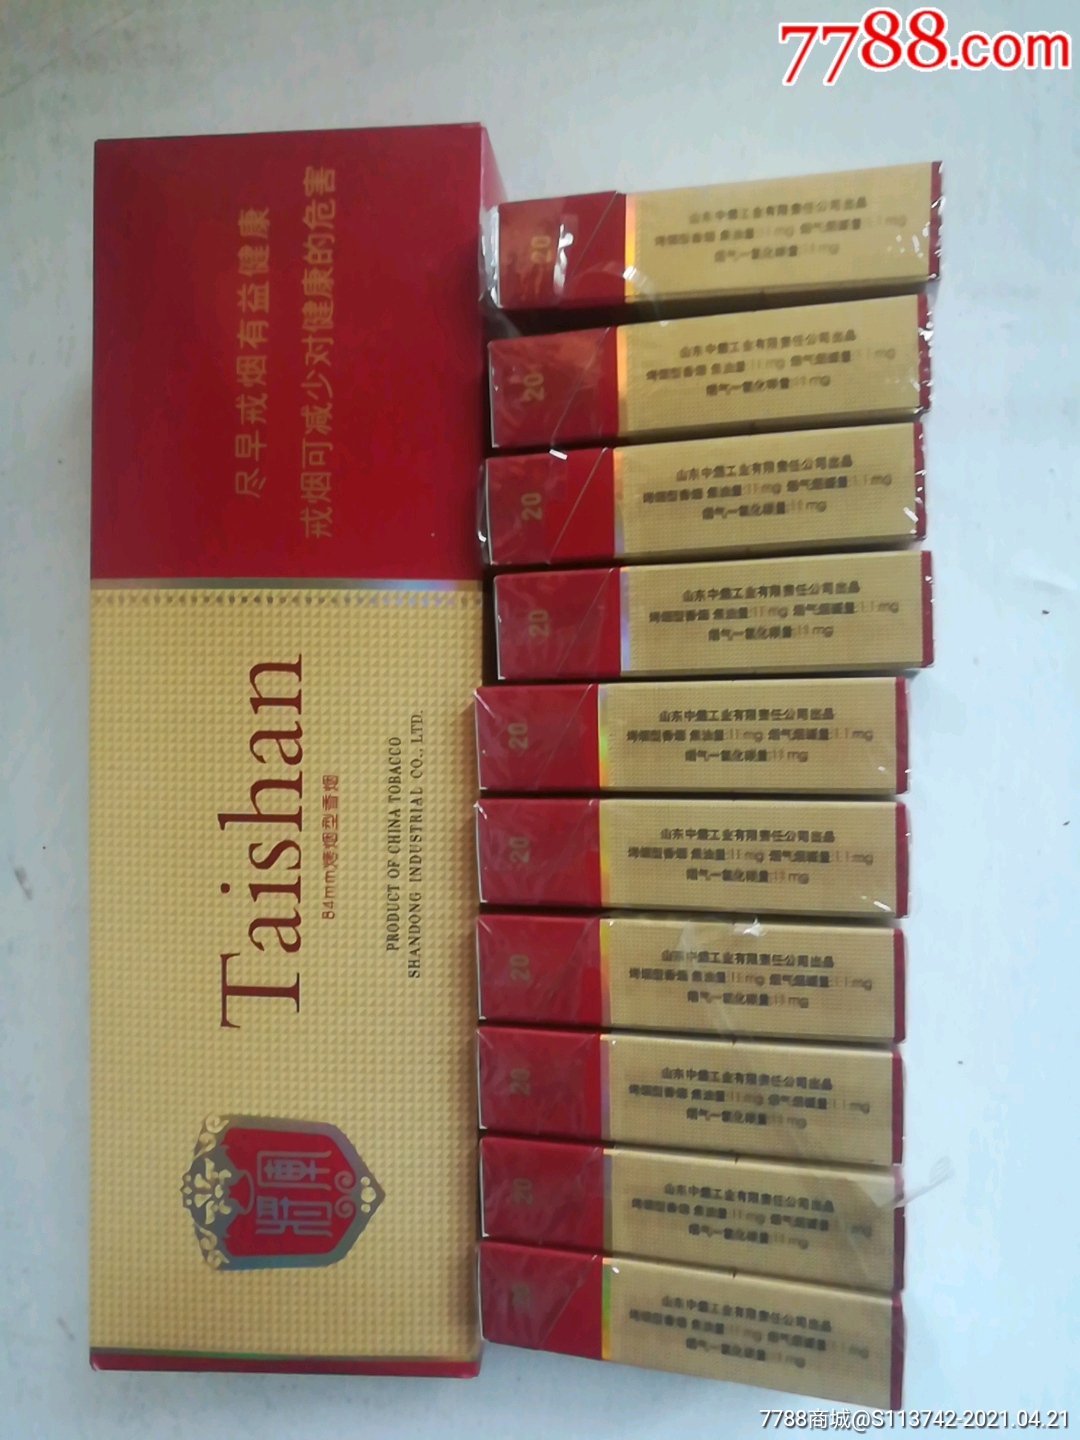 泰山将军红将1整条原装支架锡纸10个3d烟盒